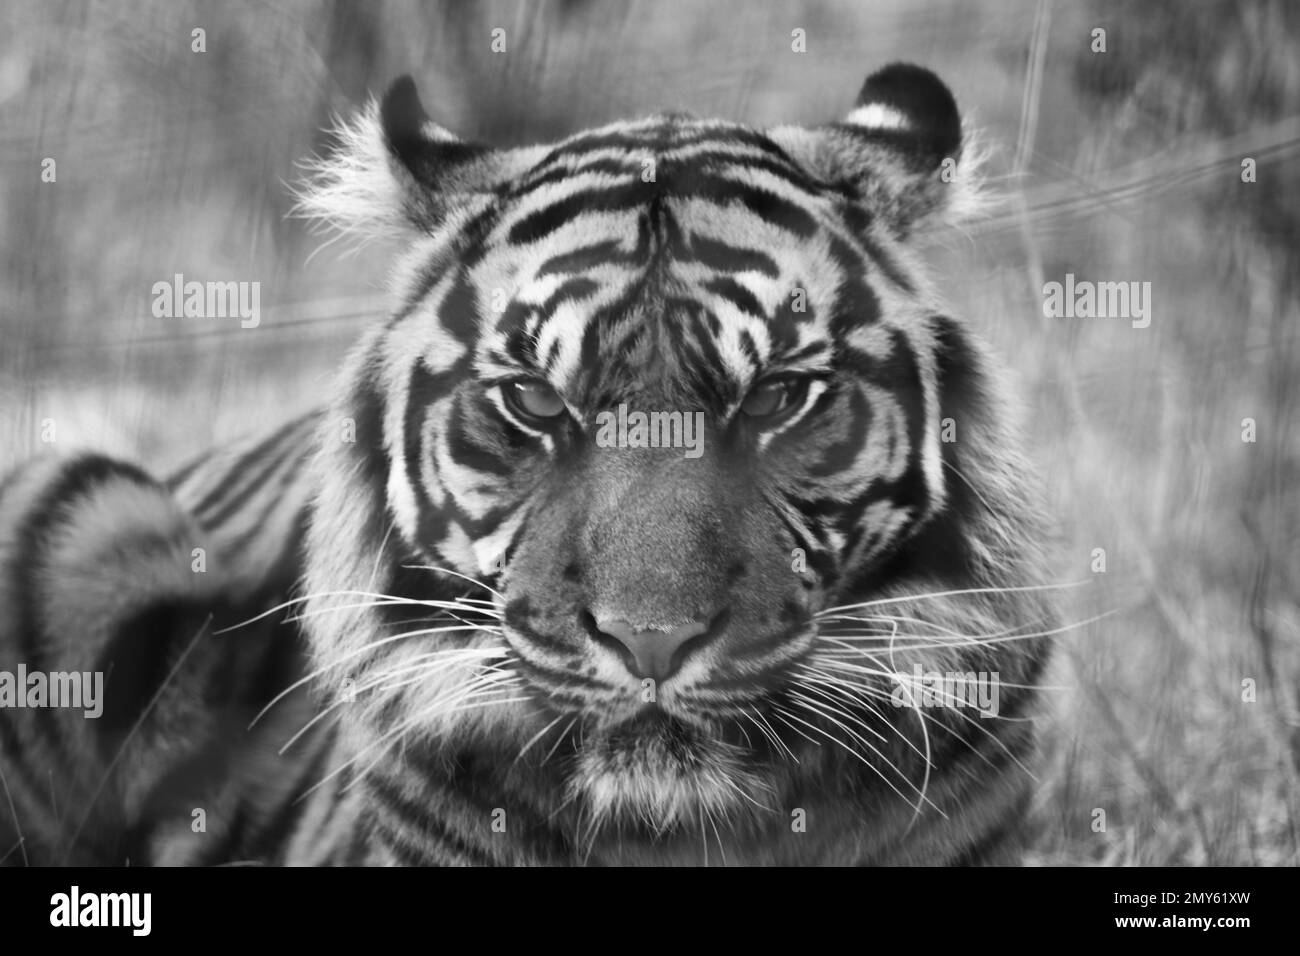 Tigre de Sumatra en cautiverio en el Reino Unido Foto de stock